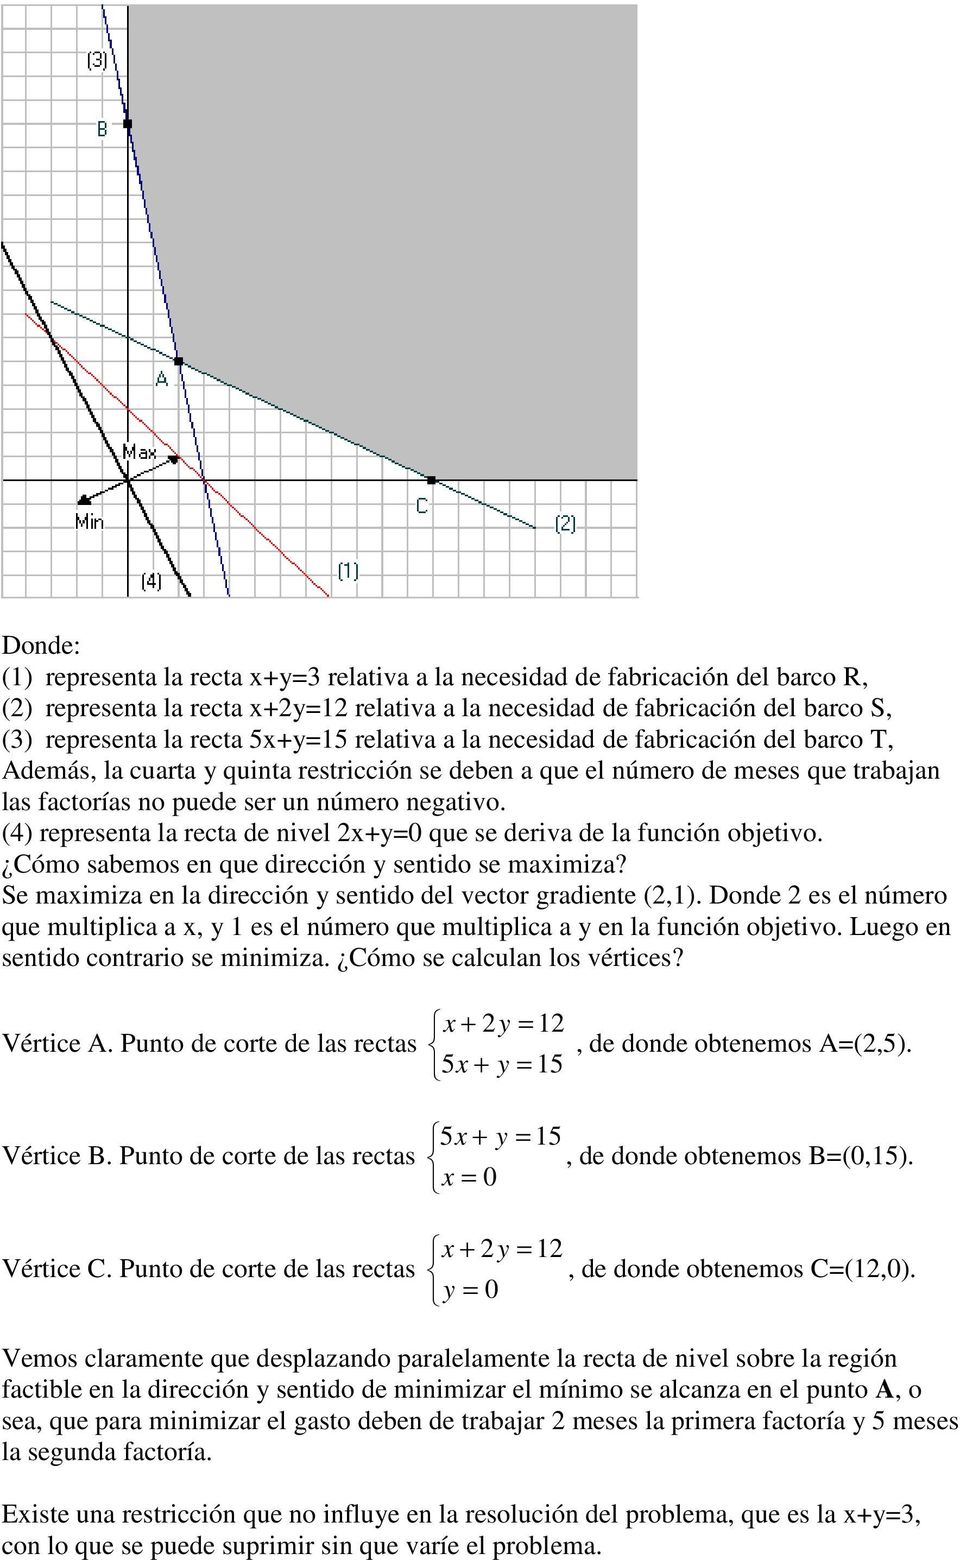 (4) representa la recta de nivel 2x+y=0 que se deriva de la función objetivo. Cómo sabemos en que dirección y sentido se maximiza? Se maximiza en la dirección y sentido del vector gradiente (2,1).